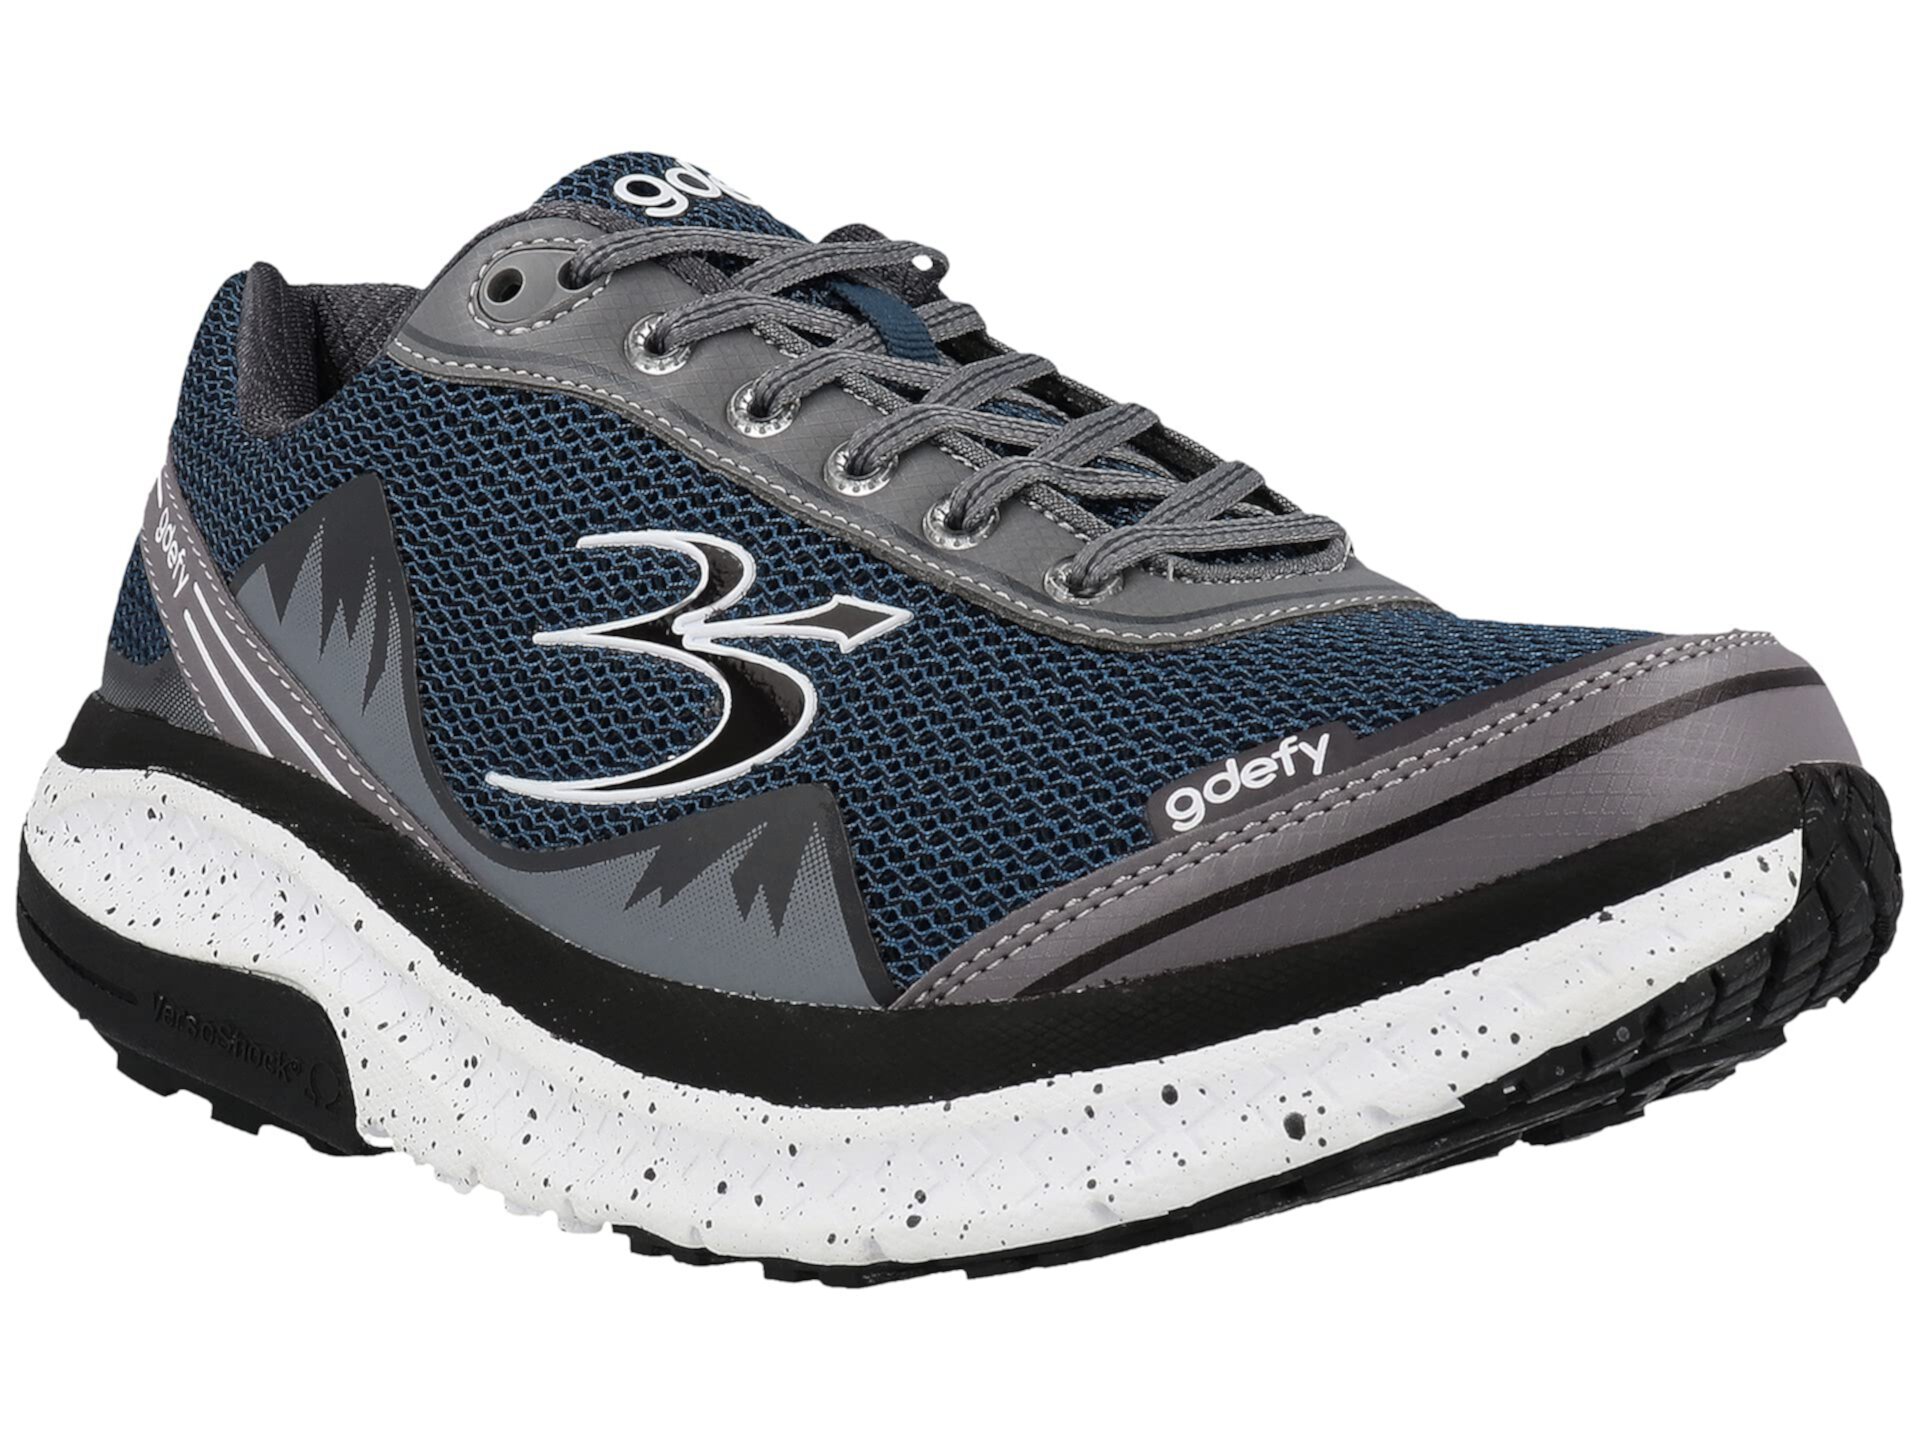 Кроссовки Gravity Defyer Mighty Walk для мужчин, категория спортивная обувь Gravity Defyer